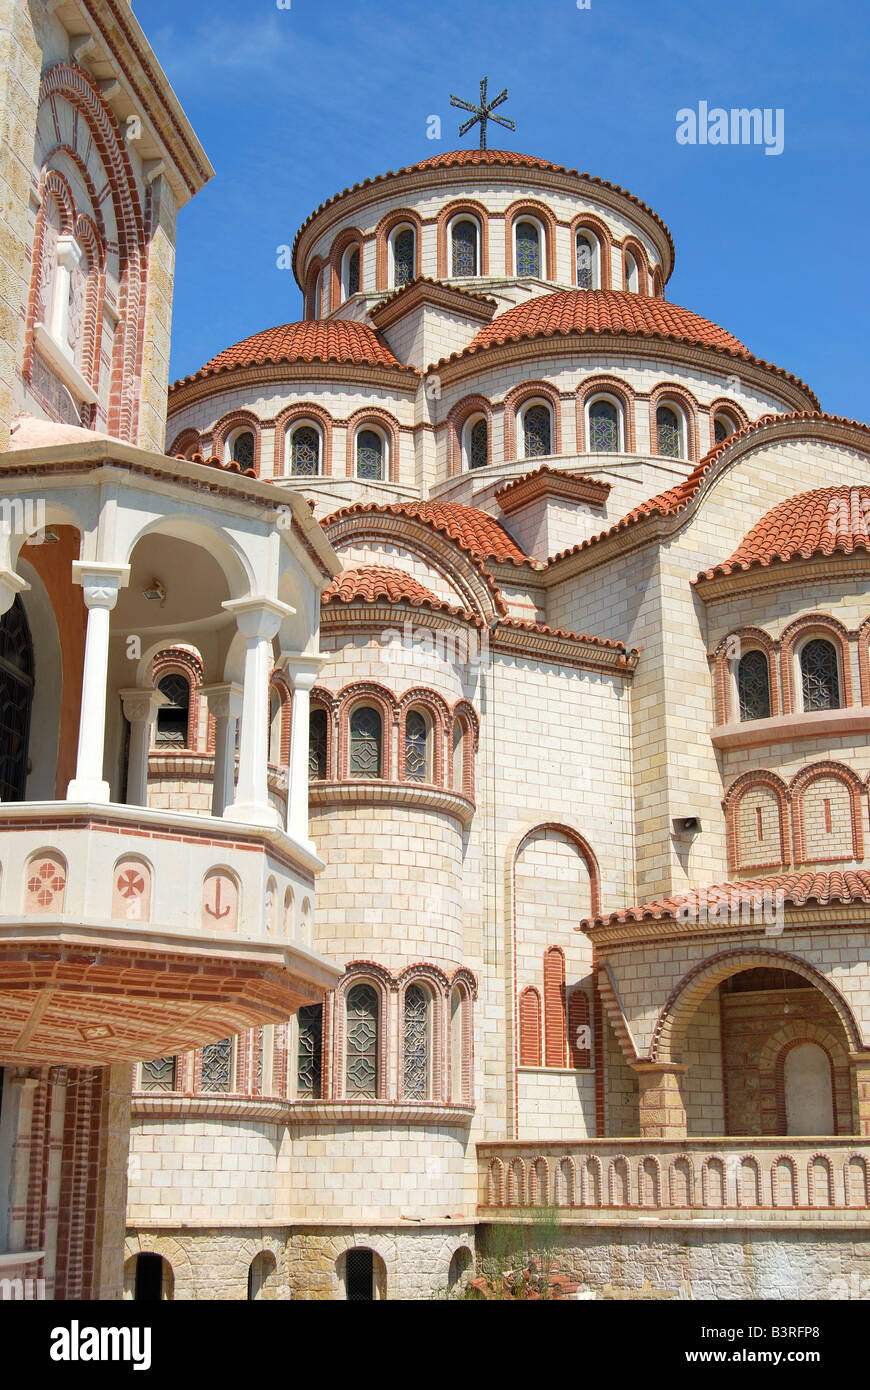 L'église grecque-orthodoxe de Trion Ierarchon, Thessalonique, Chalcidique, Macédoine Centrale, Grèce Banque D'Images